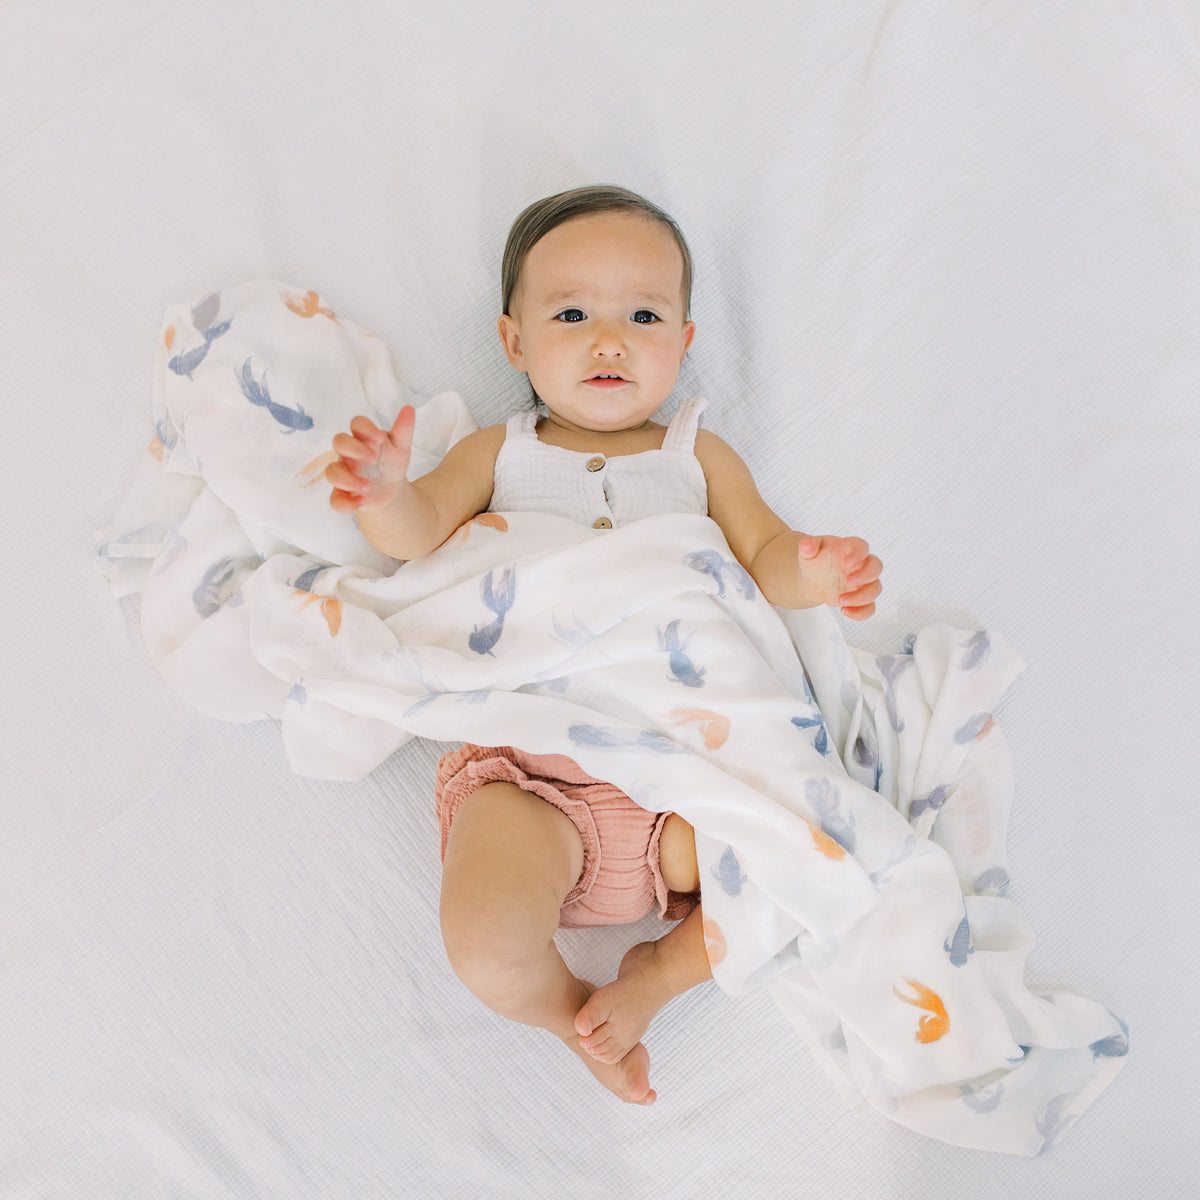 Das silky soft Musselin-Tuch vereint Atmungsaktivität und Vielseitigkeit mit 100 % Bambusfaser – das ist Luxus pur für die zarte Haut Ihres Babys. Das silky soft Pucktuch kann auch als Kinderwagendecke, Spucktuch, Stillschal und vieles mehr verwendet werden.